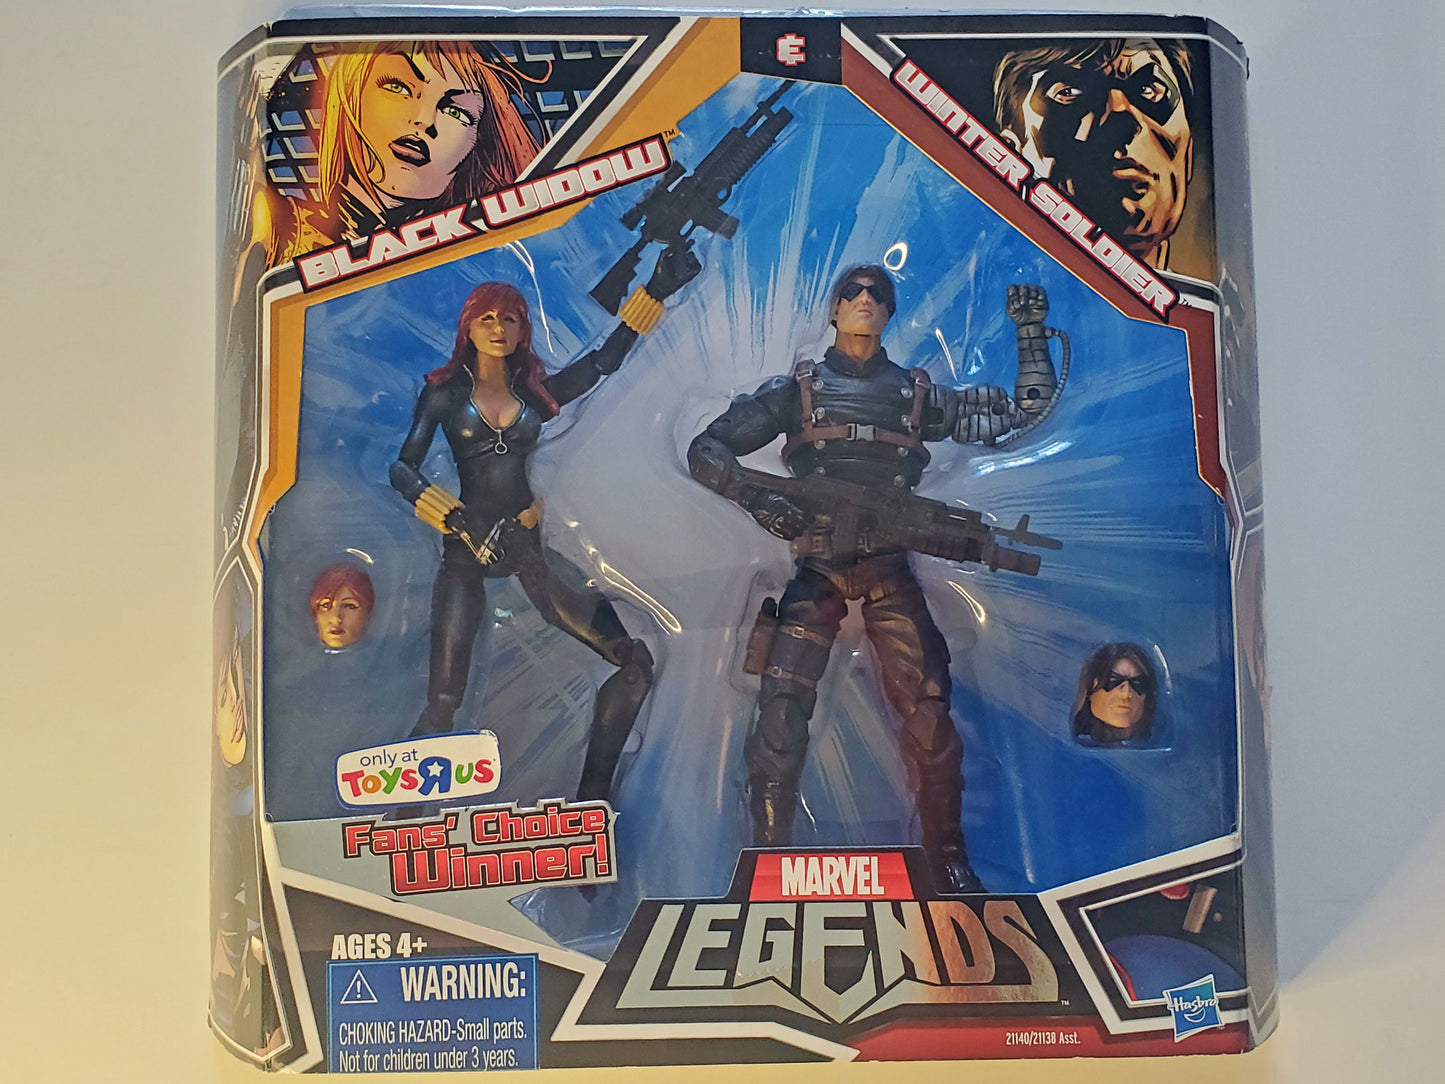 Marvel Legends Exclusive Black Widow & Winter Soldier (Black Widow in Black Costume) Action Figure 2-Pack